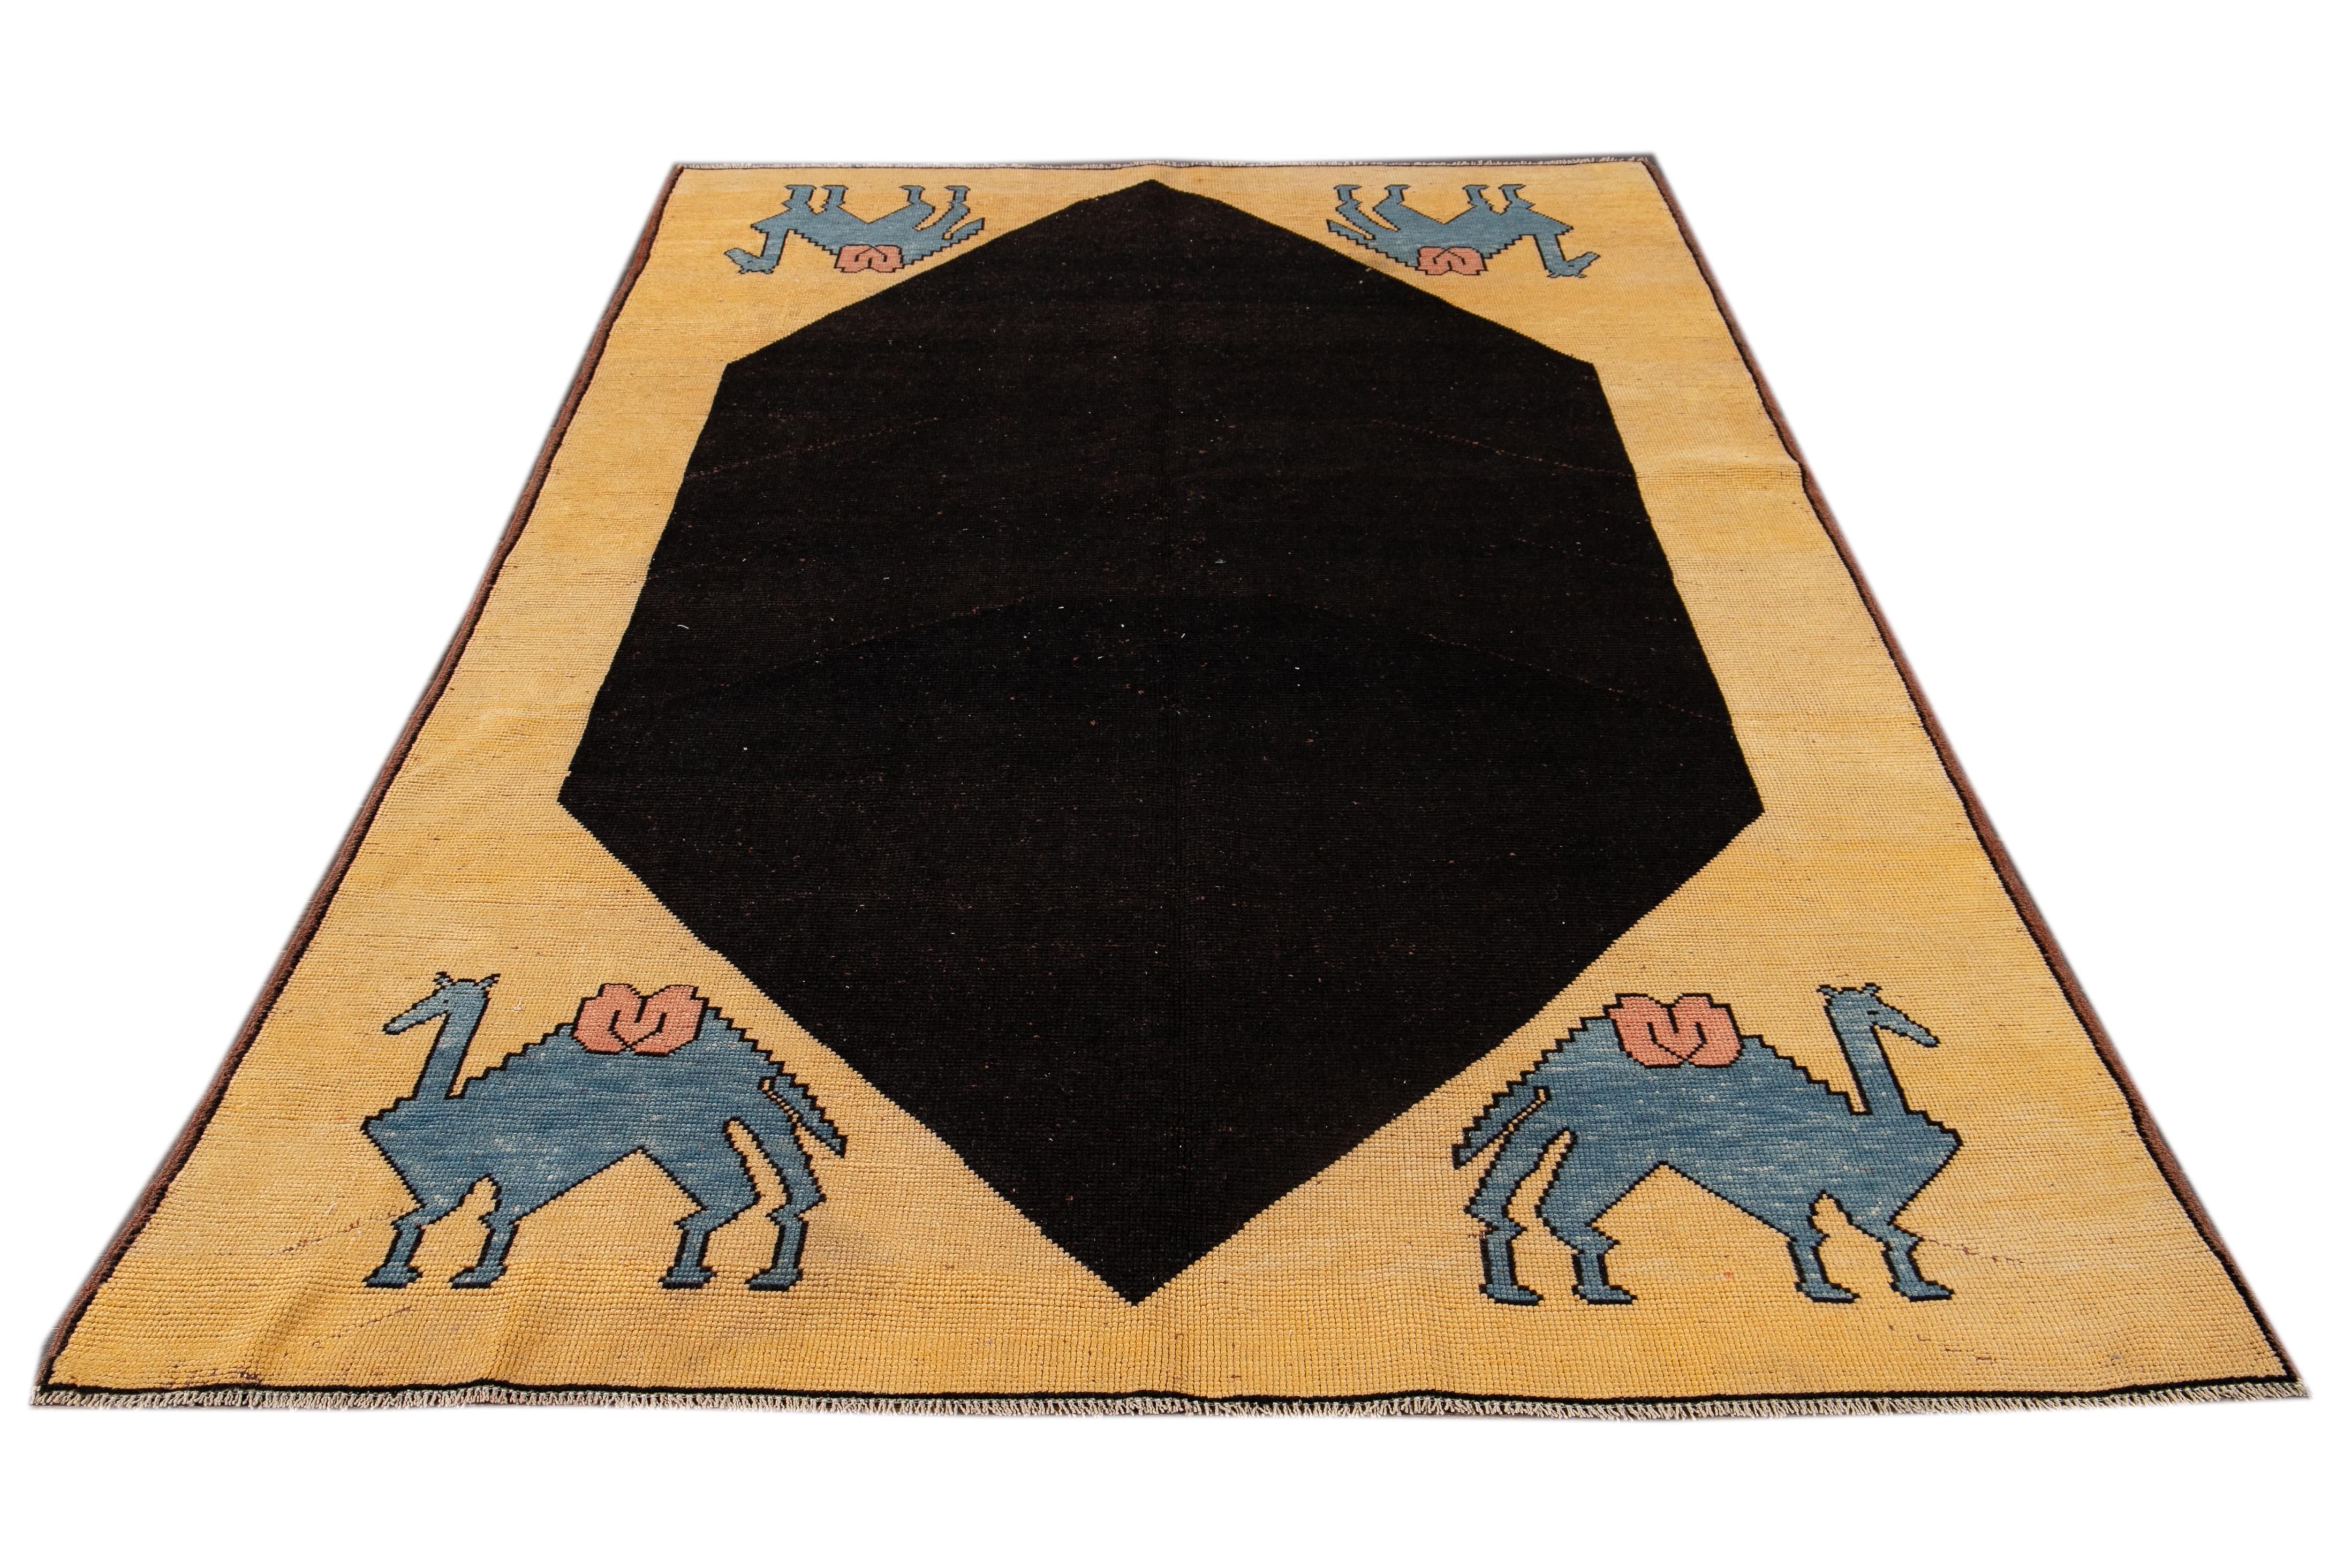 Magnifique tapis Art Deco turc vintage, noué à la main en laine avec un champ jaune et des accents noirs et bleus dans un magnifique motif géométrique,

Ce tapis mesure 6